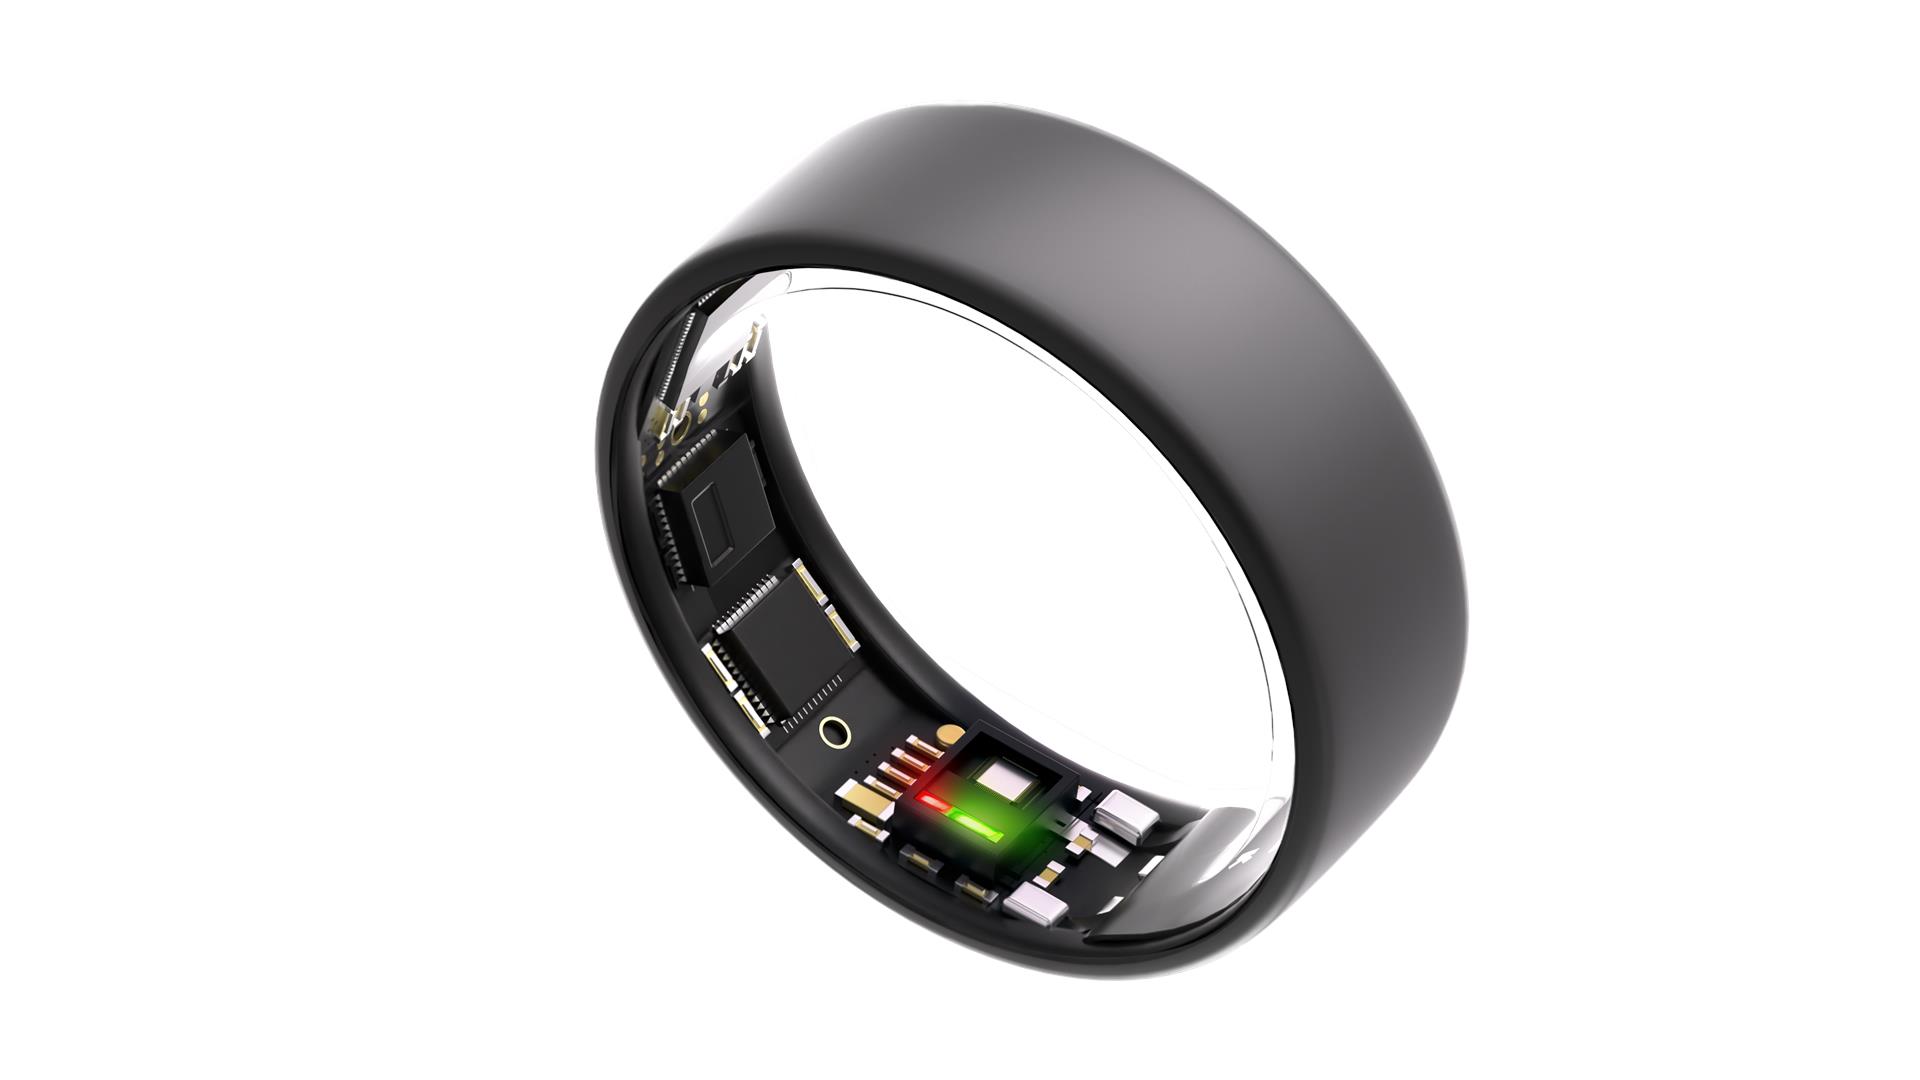 Ultrahuman Ring Air умное кольцо, матовый серый, 07